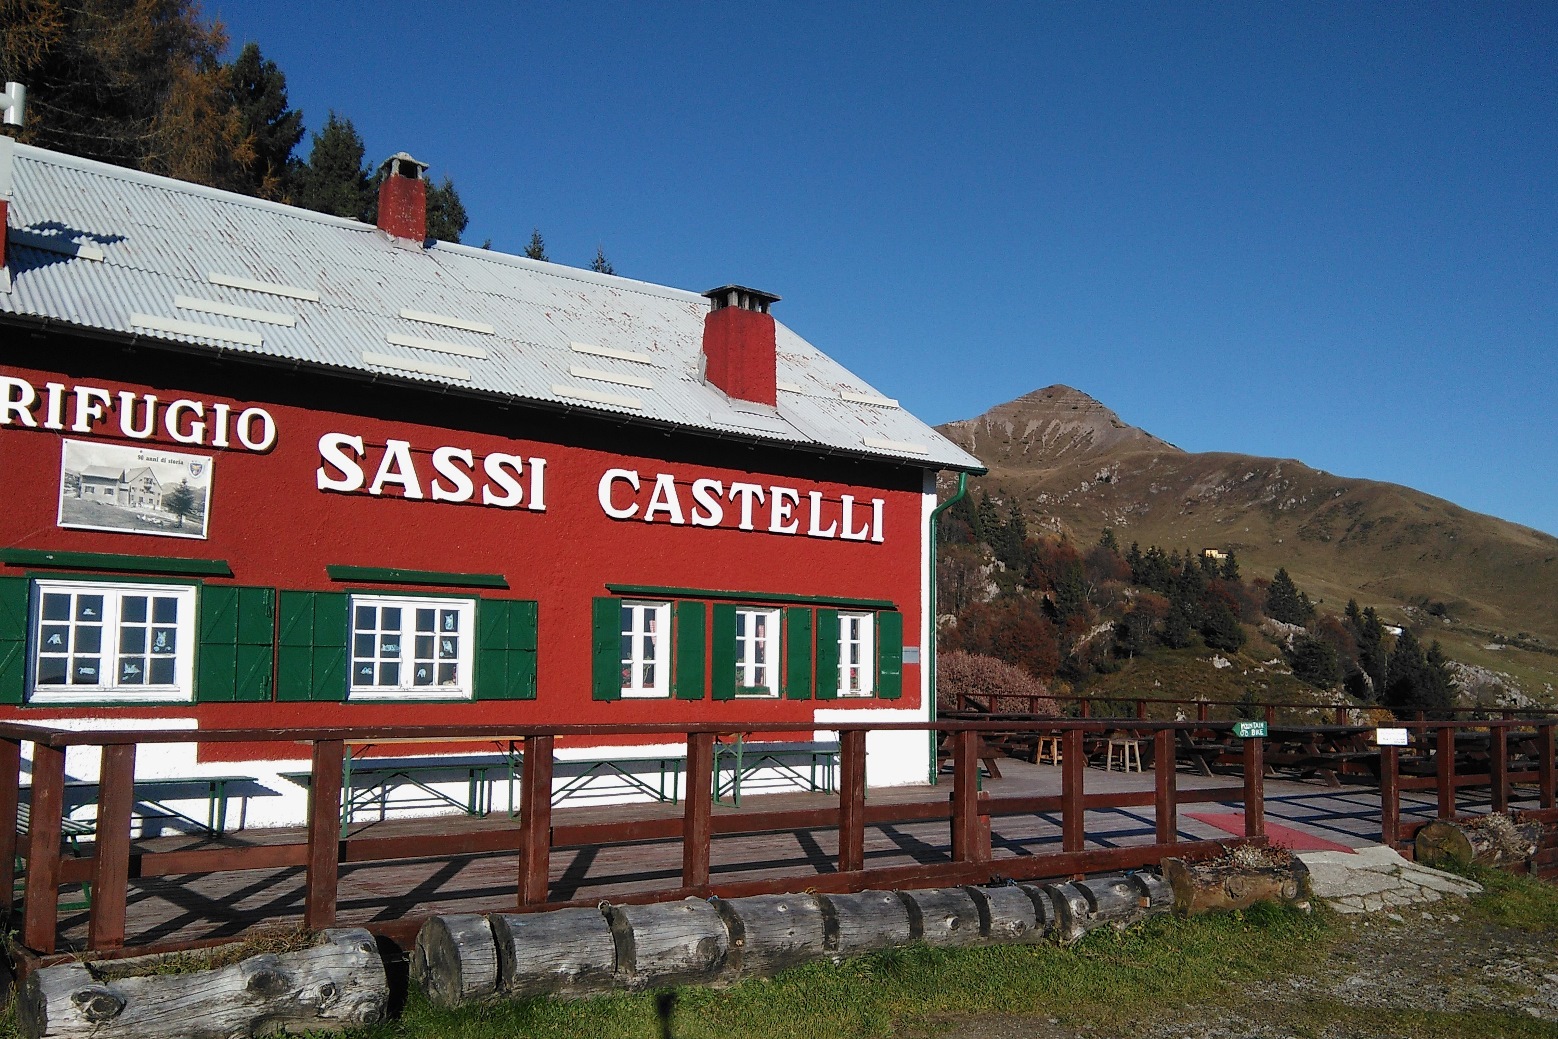 <h1>Rifugio Sassi Castelli</h1>